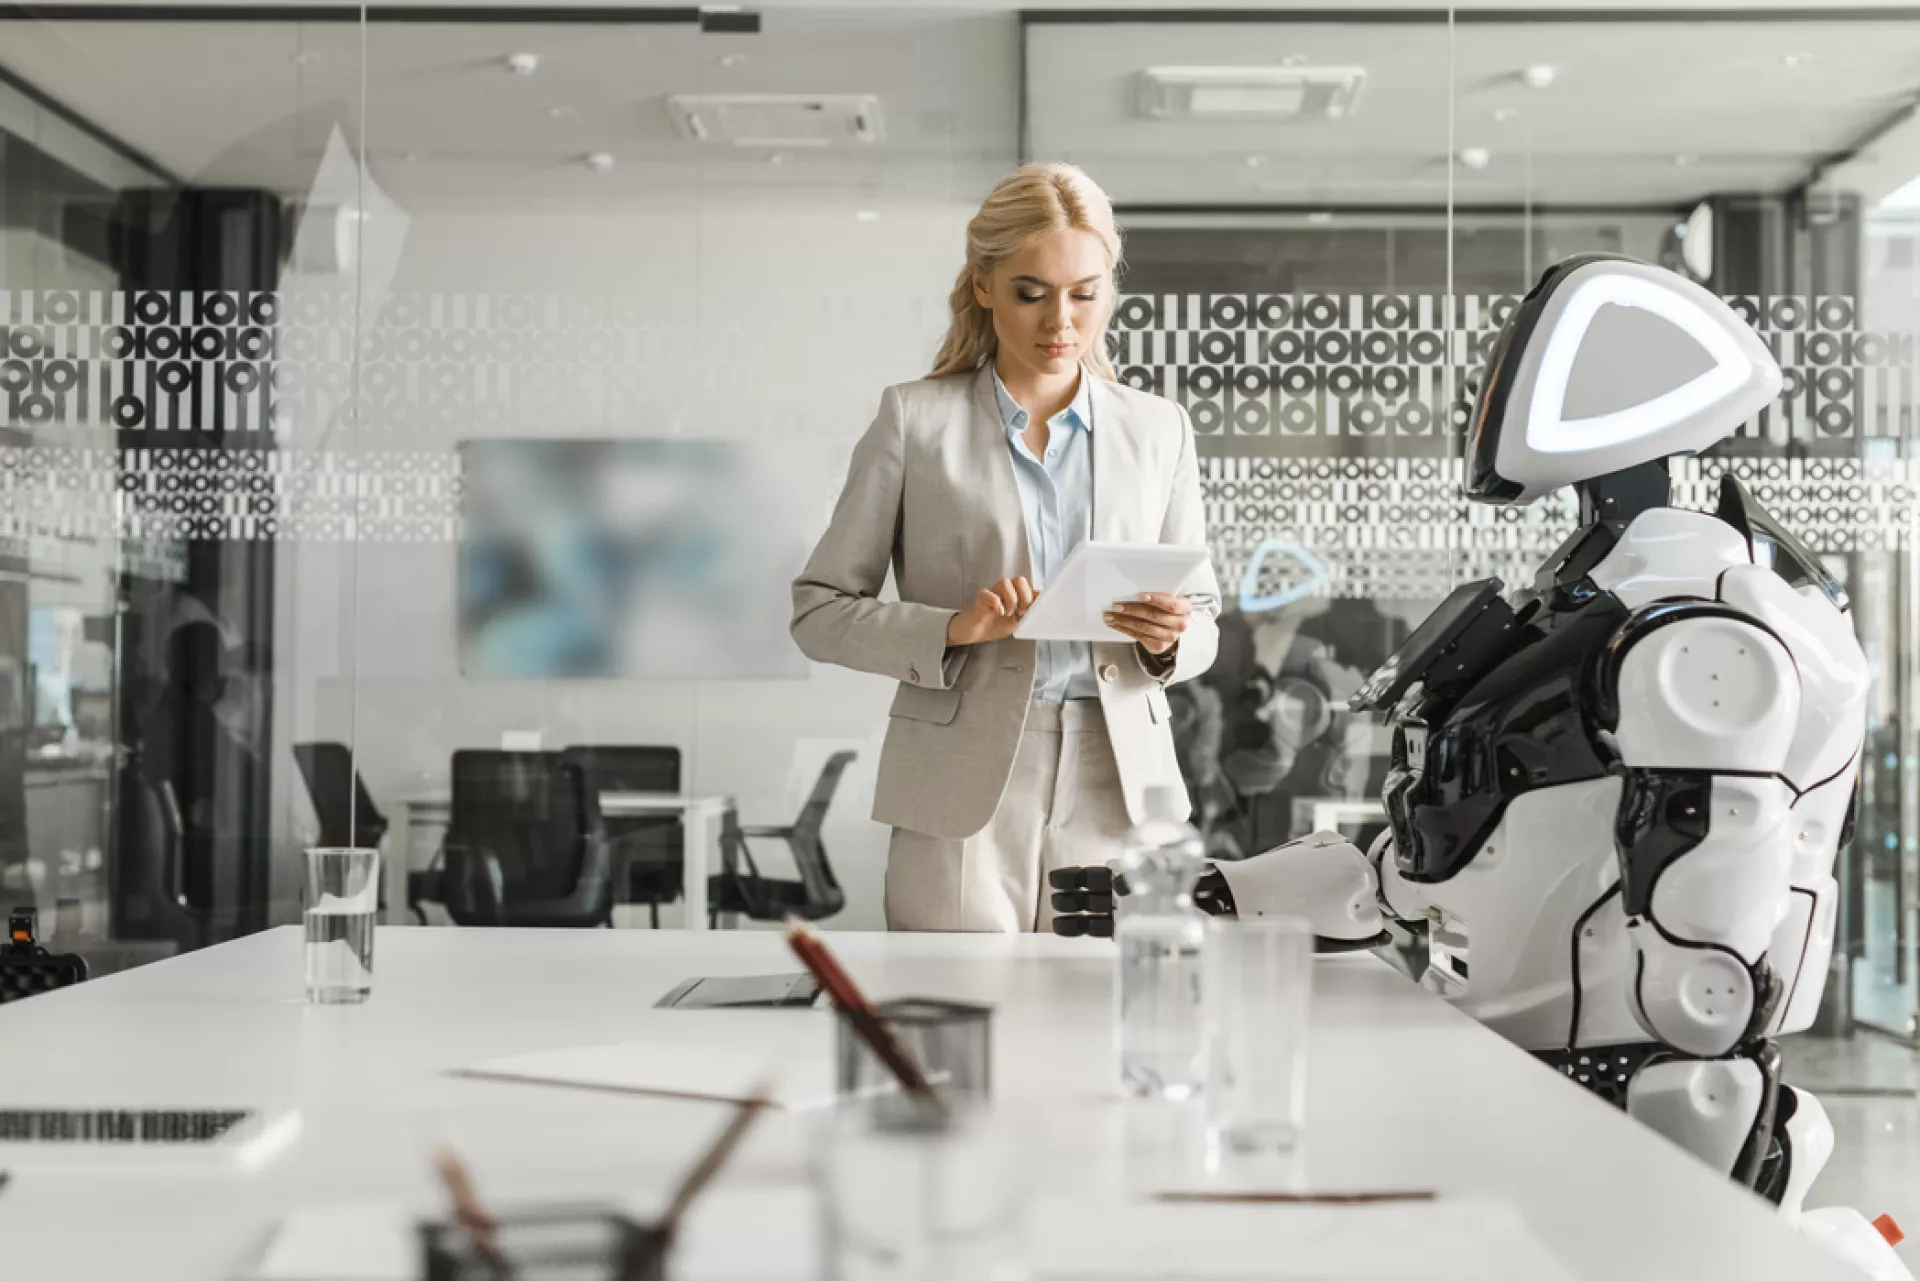 Auf dem Foto steht eine Frau in Businesskleidung in einer modernen Bürolandschaft vor einem Besprechungstisch, an dem ein Roboter sitzt.